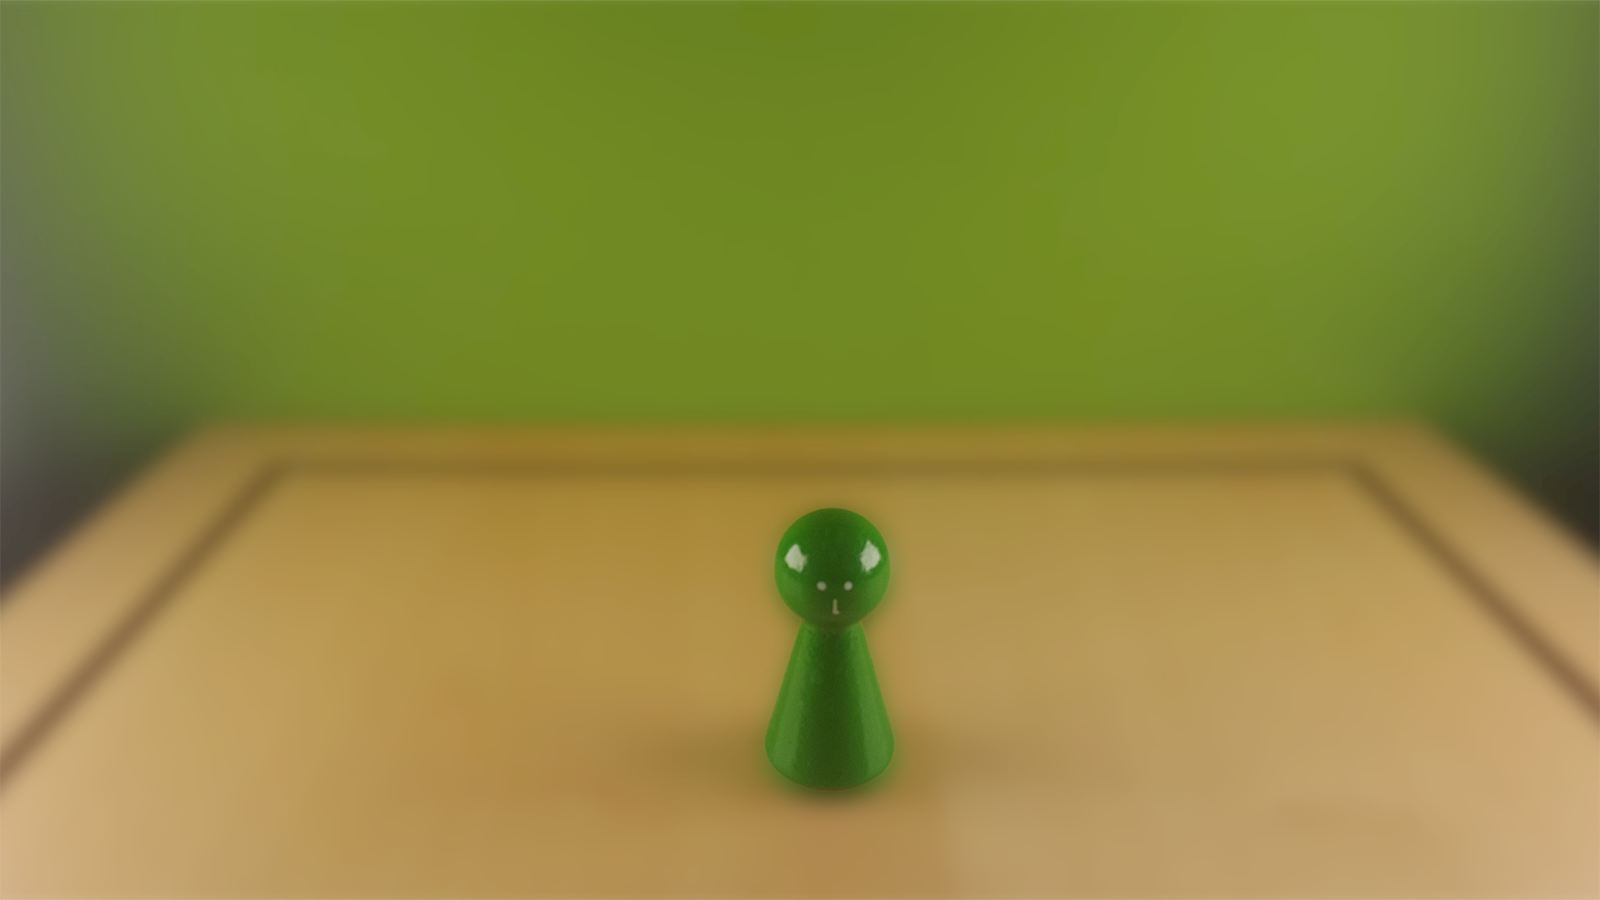 www.systembrett.at · Systembrett-Artikel · Einzel-Figur 6 cm in grün (mit Augen);